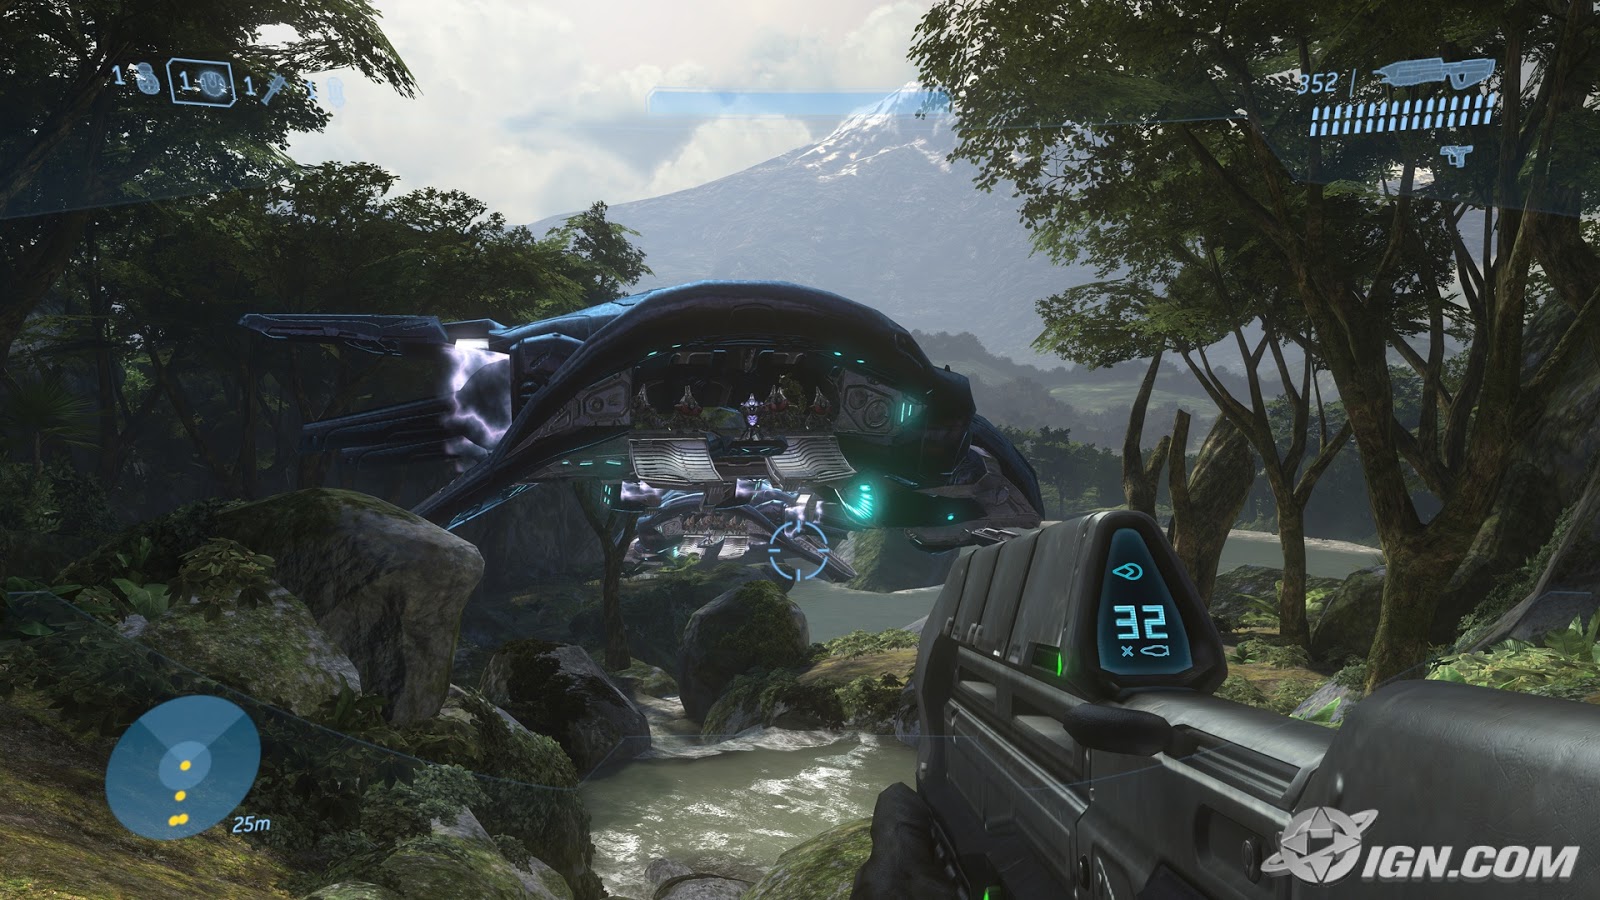 Descargar Halo 3 Completo Para Pc 1 Link En Espanol